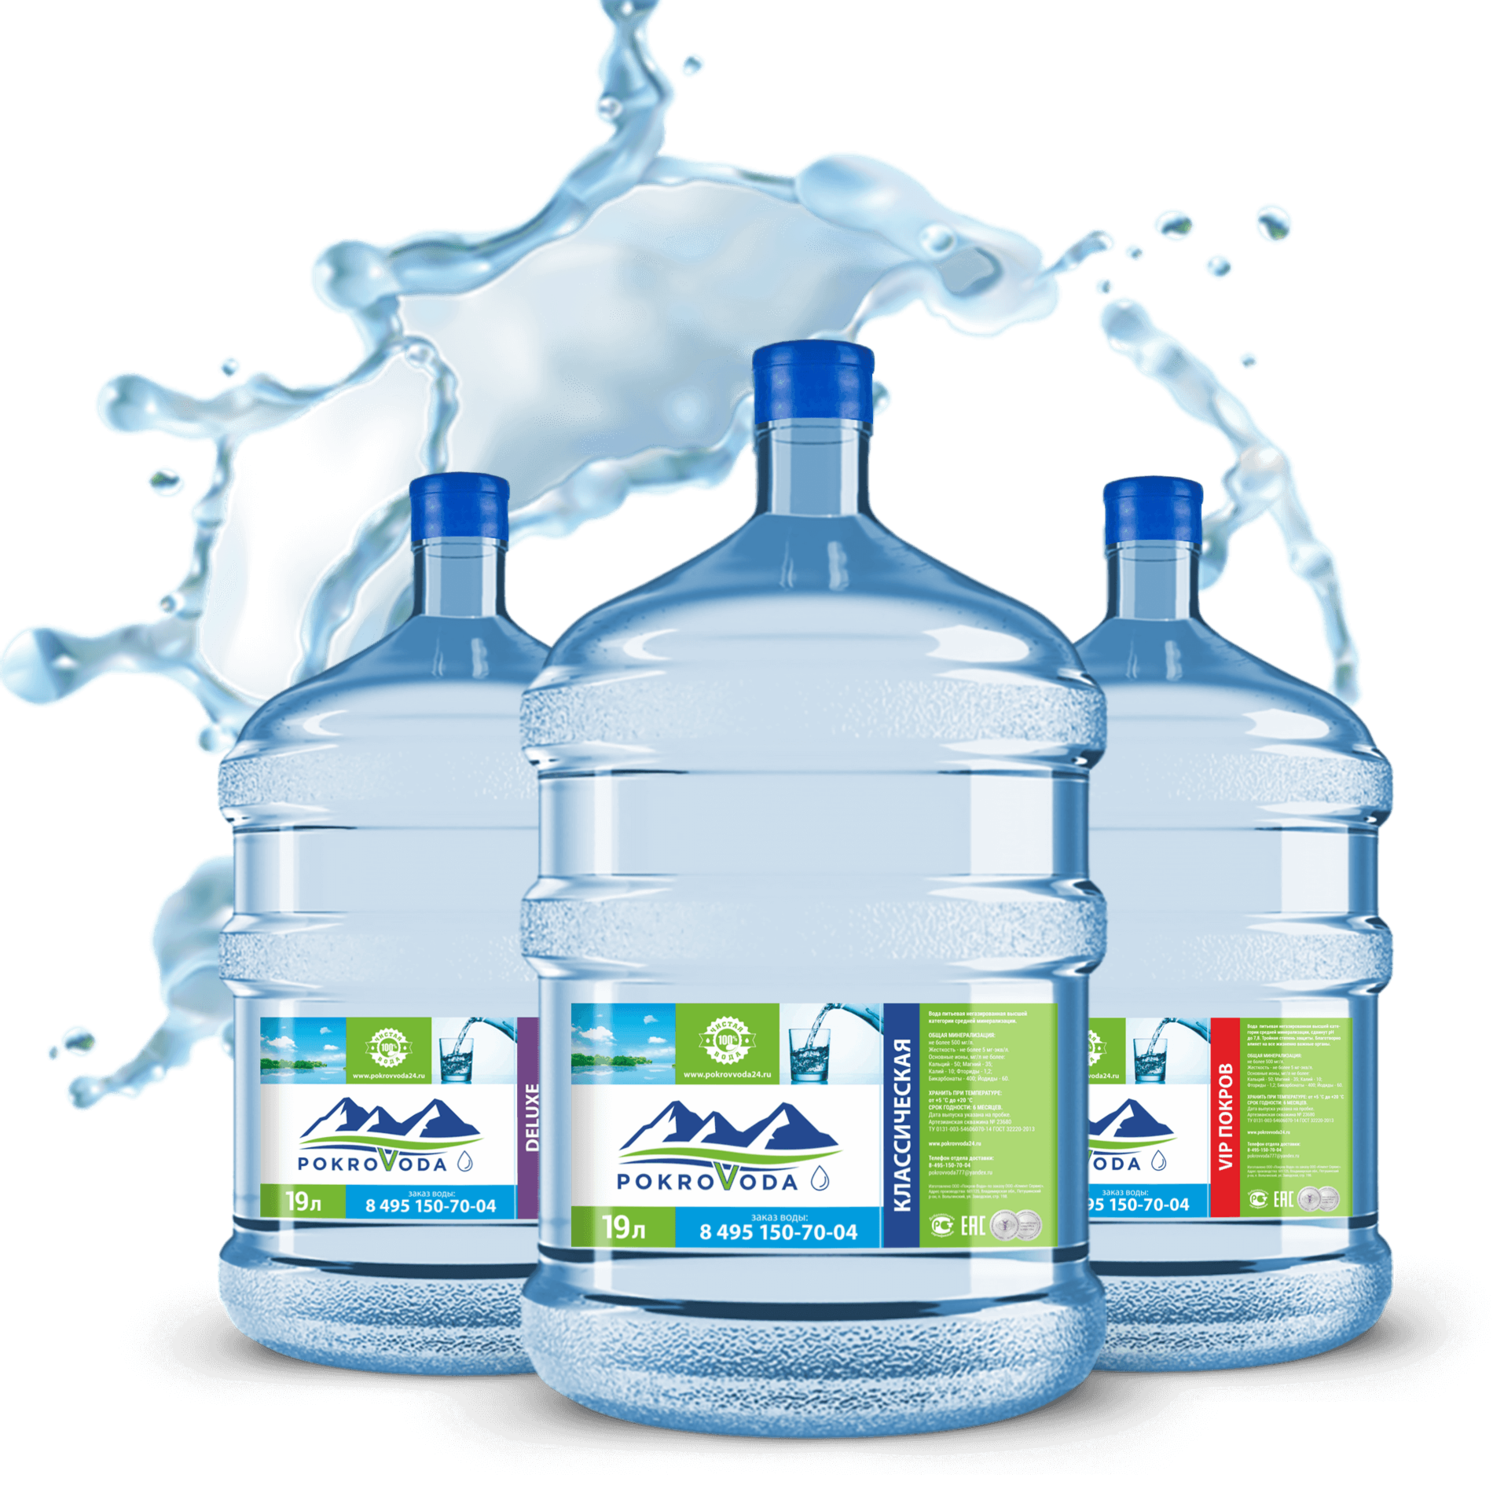 Фирмы питьевой воды. Бутилированная вода. Вода в бутылях. Реклама питьевой воды. Вода питьевая бутилированная.